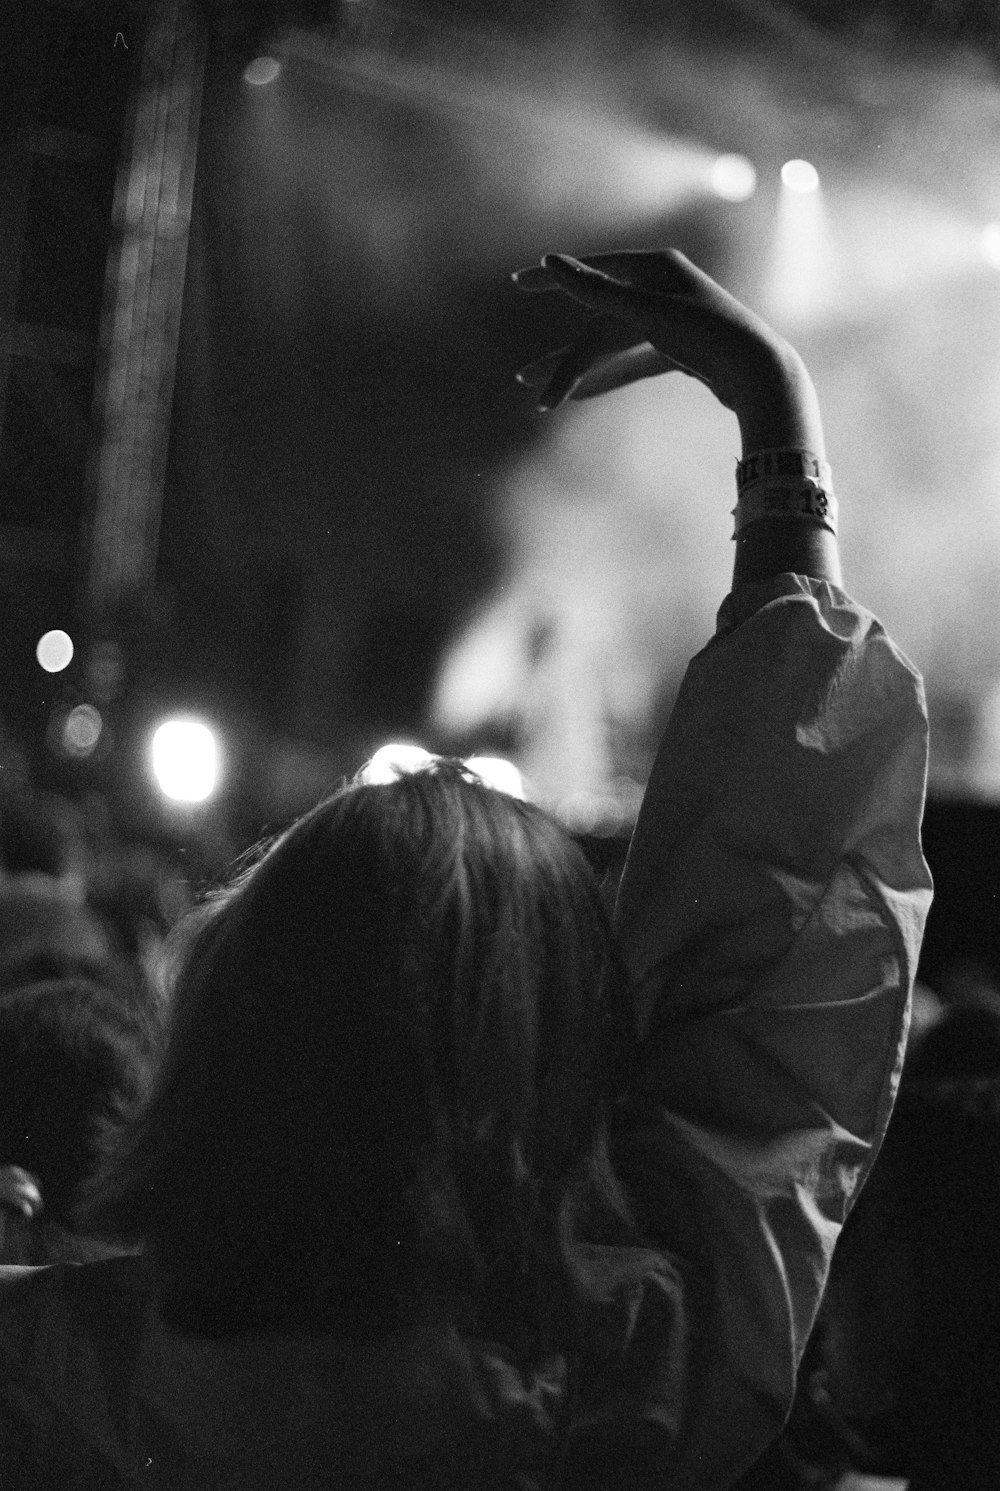 Una foto en blanco y negro de una persona levantando la mano